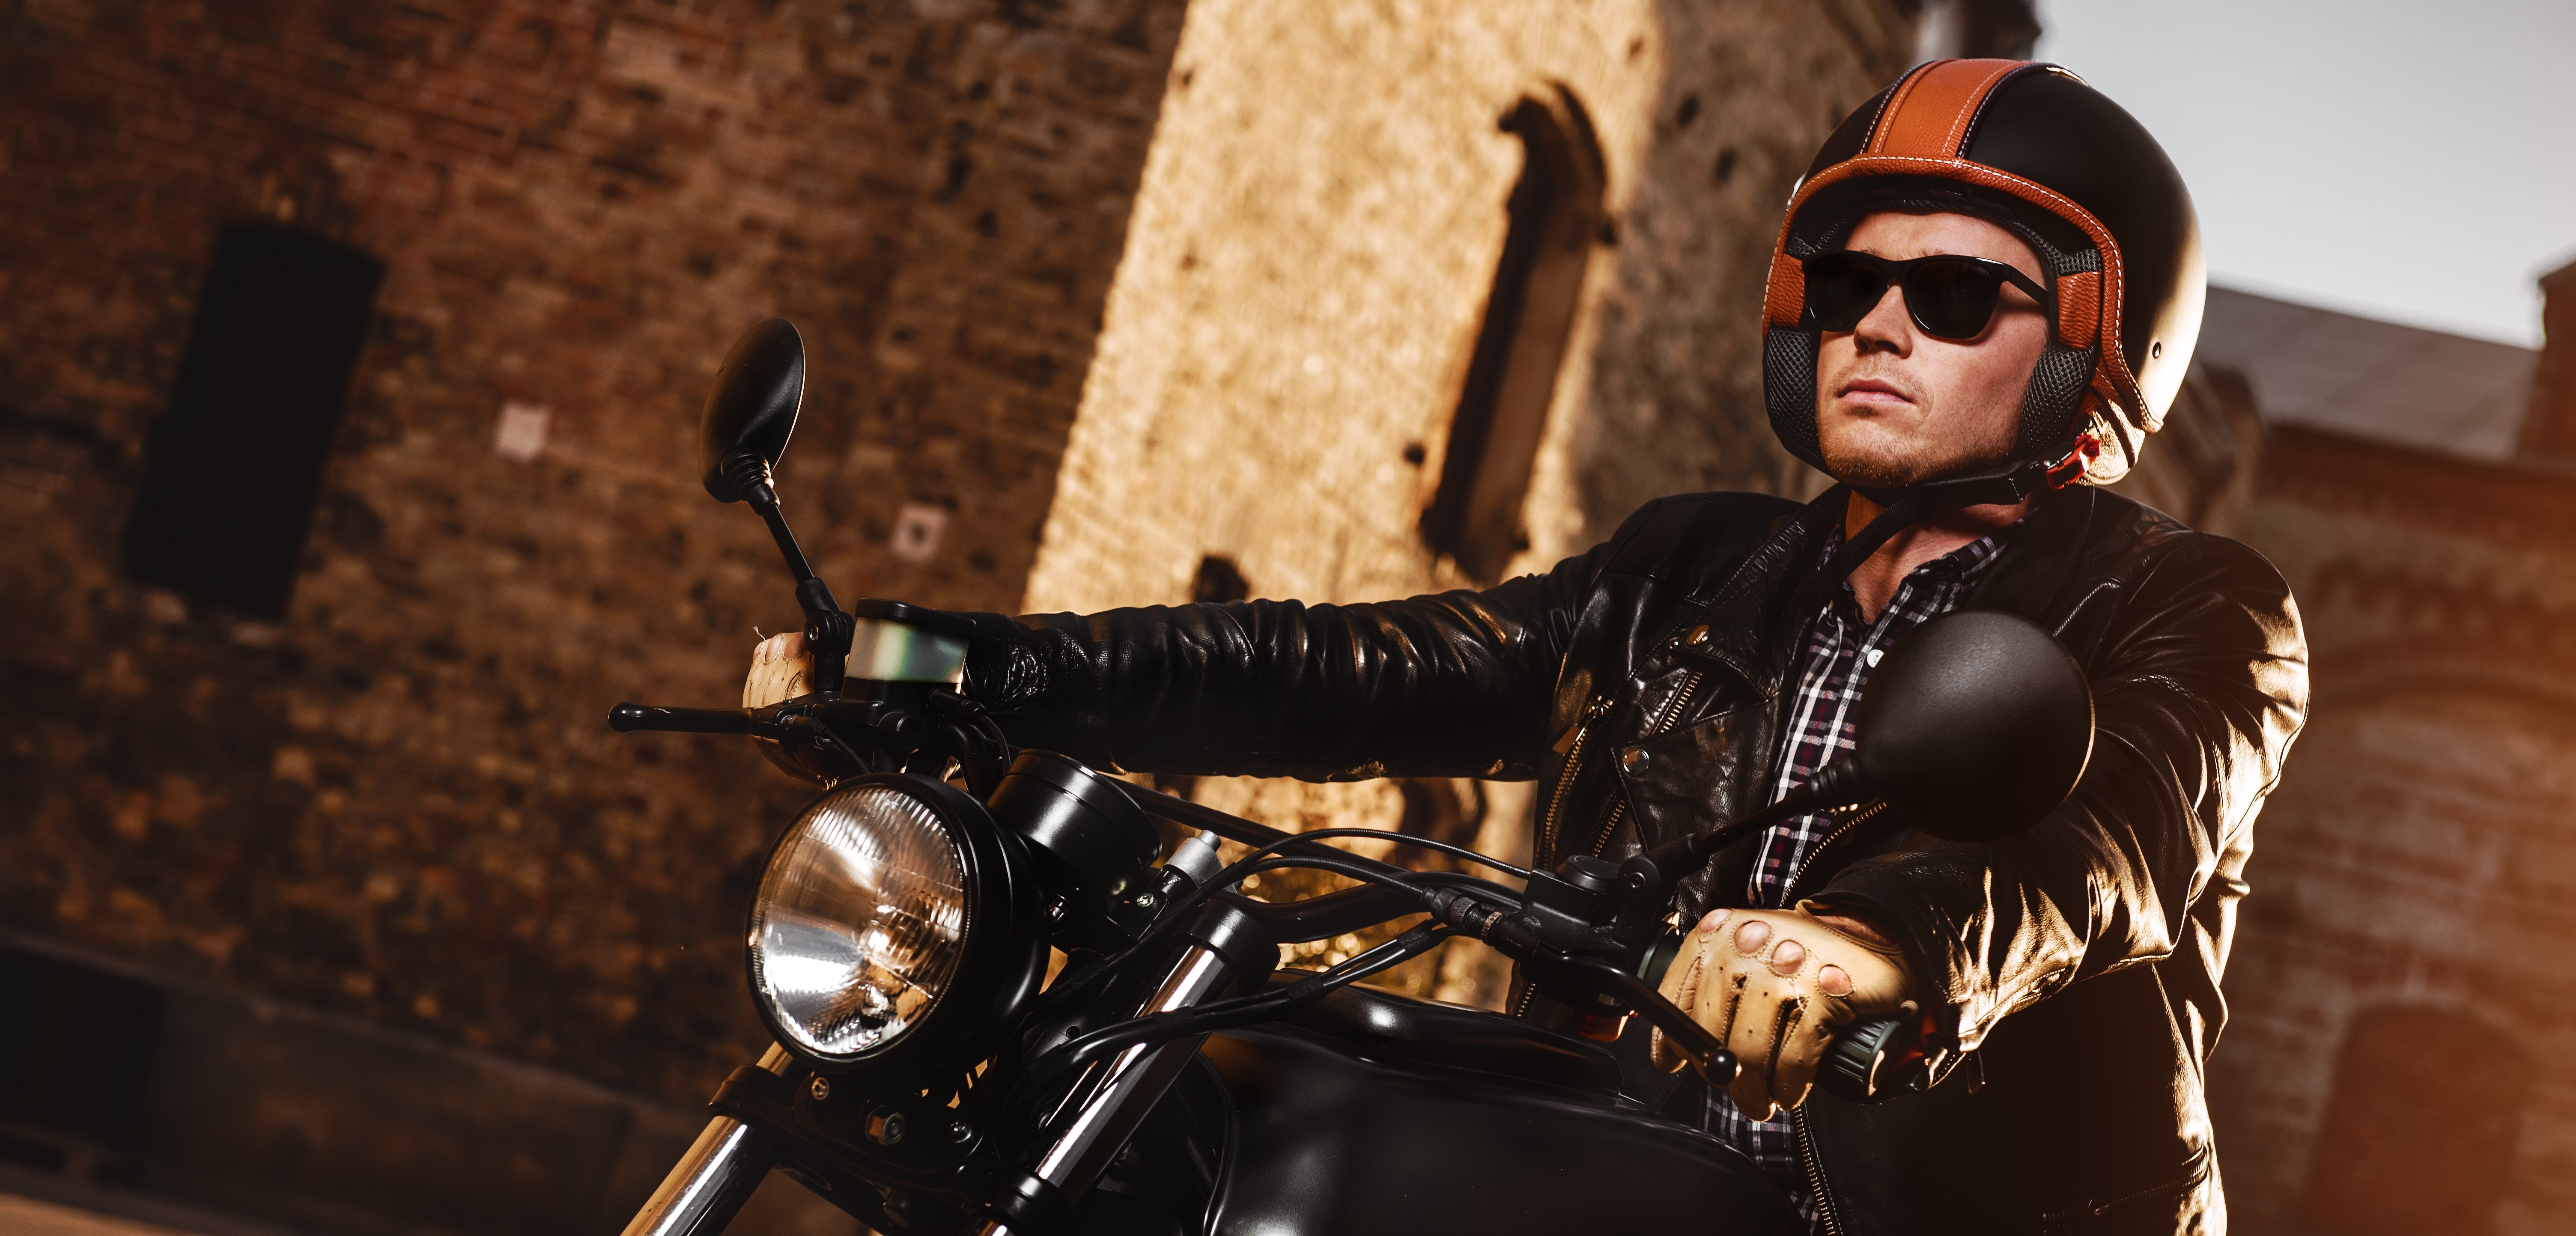 Bunt Cocoarm Motorradbrille mit abnehmbarer Gesichtsmaske abnehmbare beschlagfreie Brille Motorrad Schutzbrille Staubschutz Brille Motorrad Gesichtsmaske für Fahrrad Motocross 